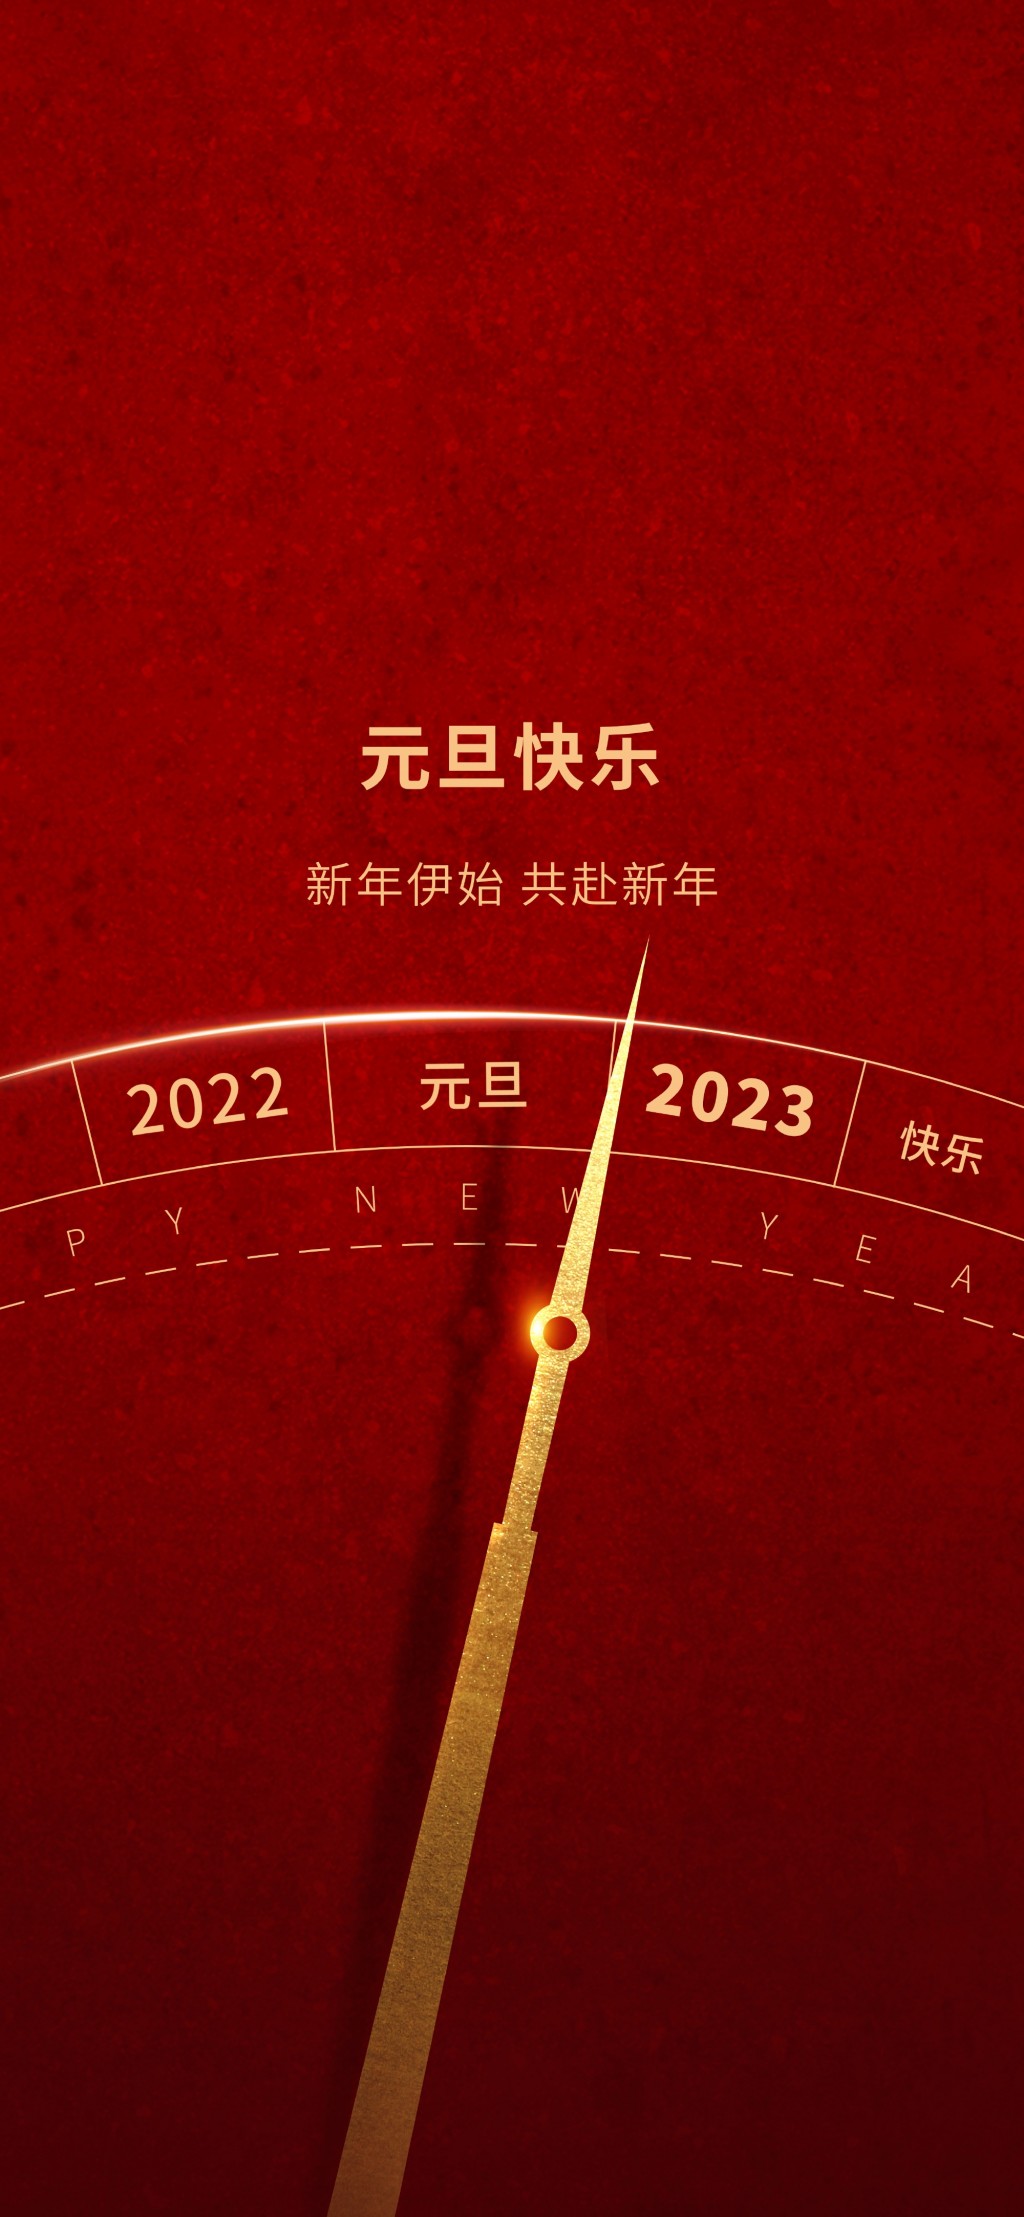 2023元旦节新年快乐手机壁纸